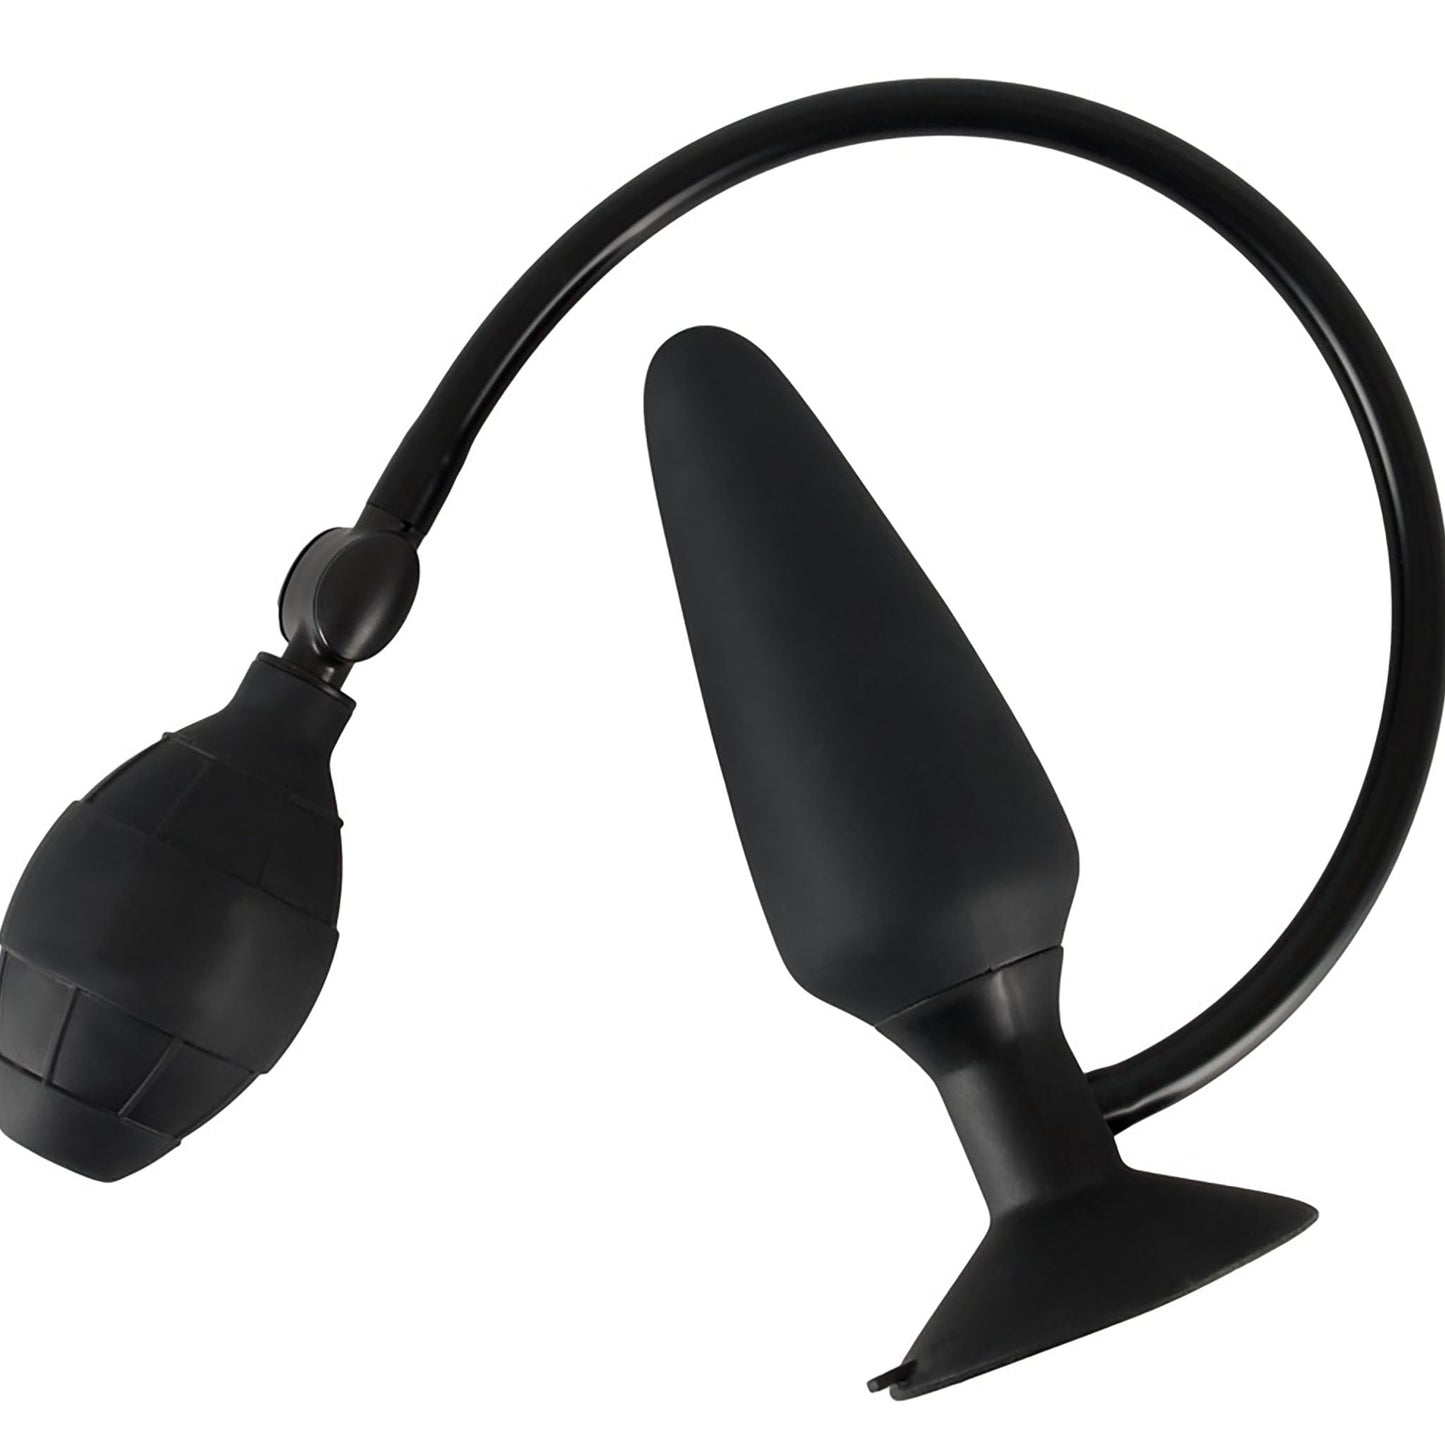 True Black Inflatable Butt Plug, aufblasbarer Analplug in schwarz mit Ballpumpe Maße